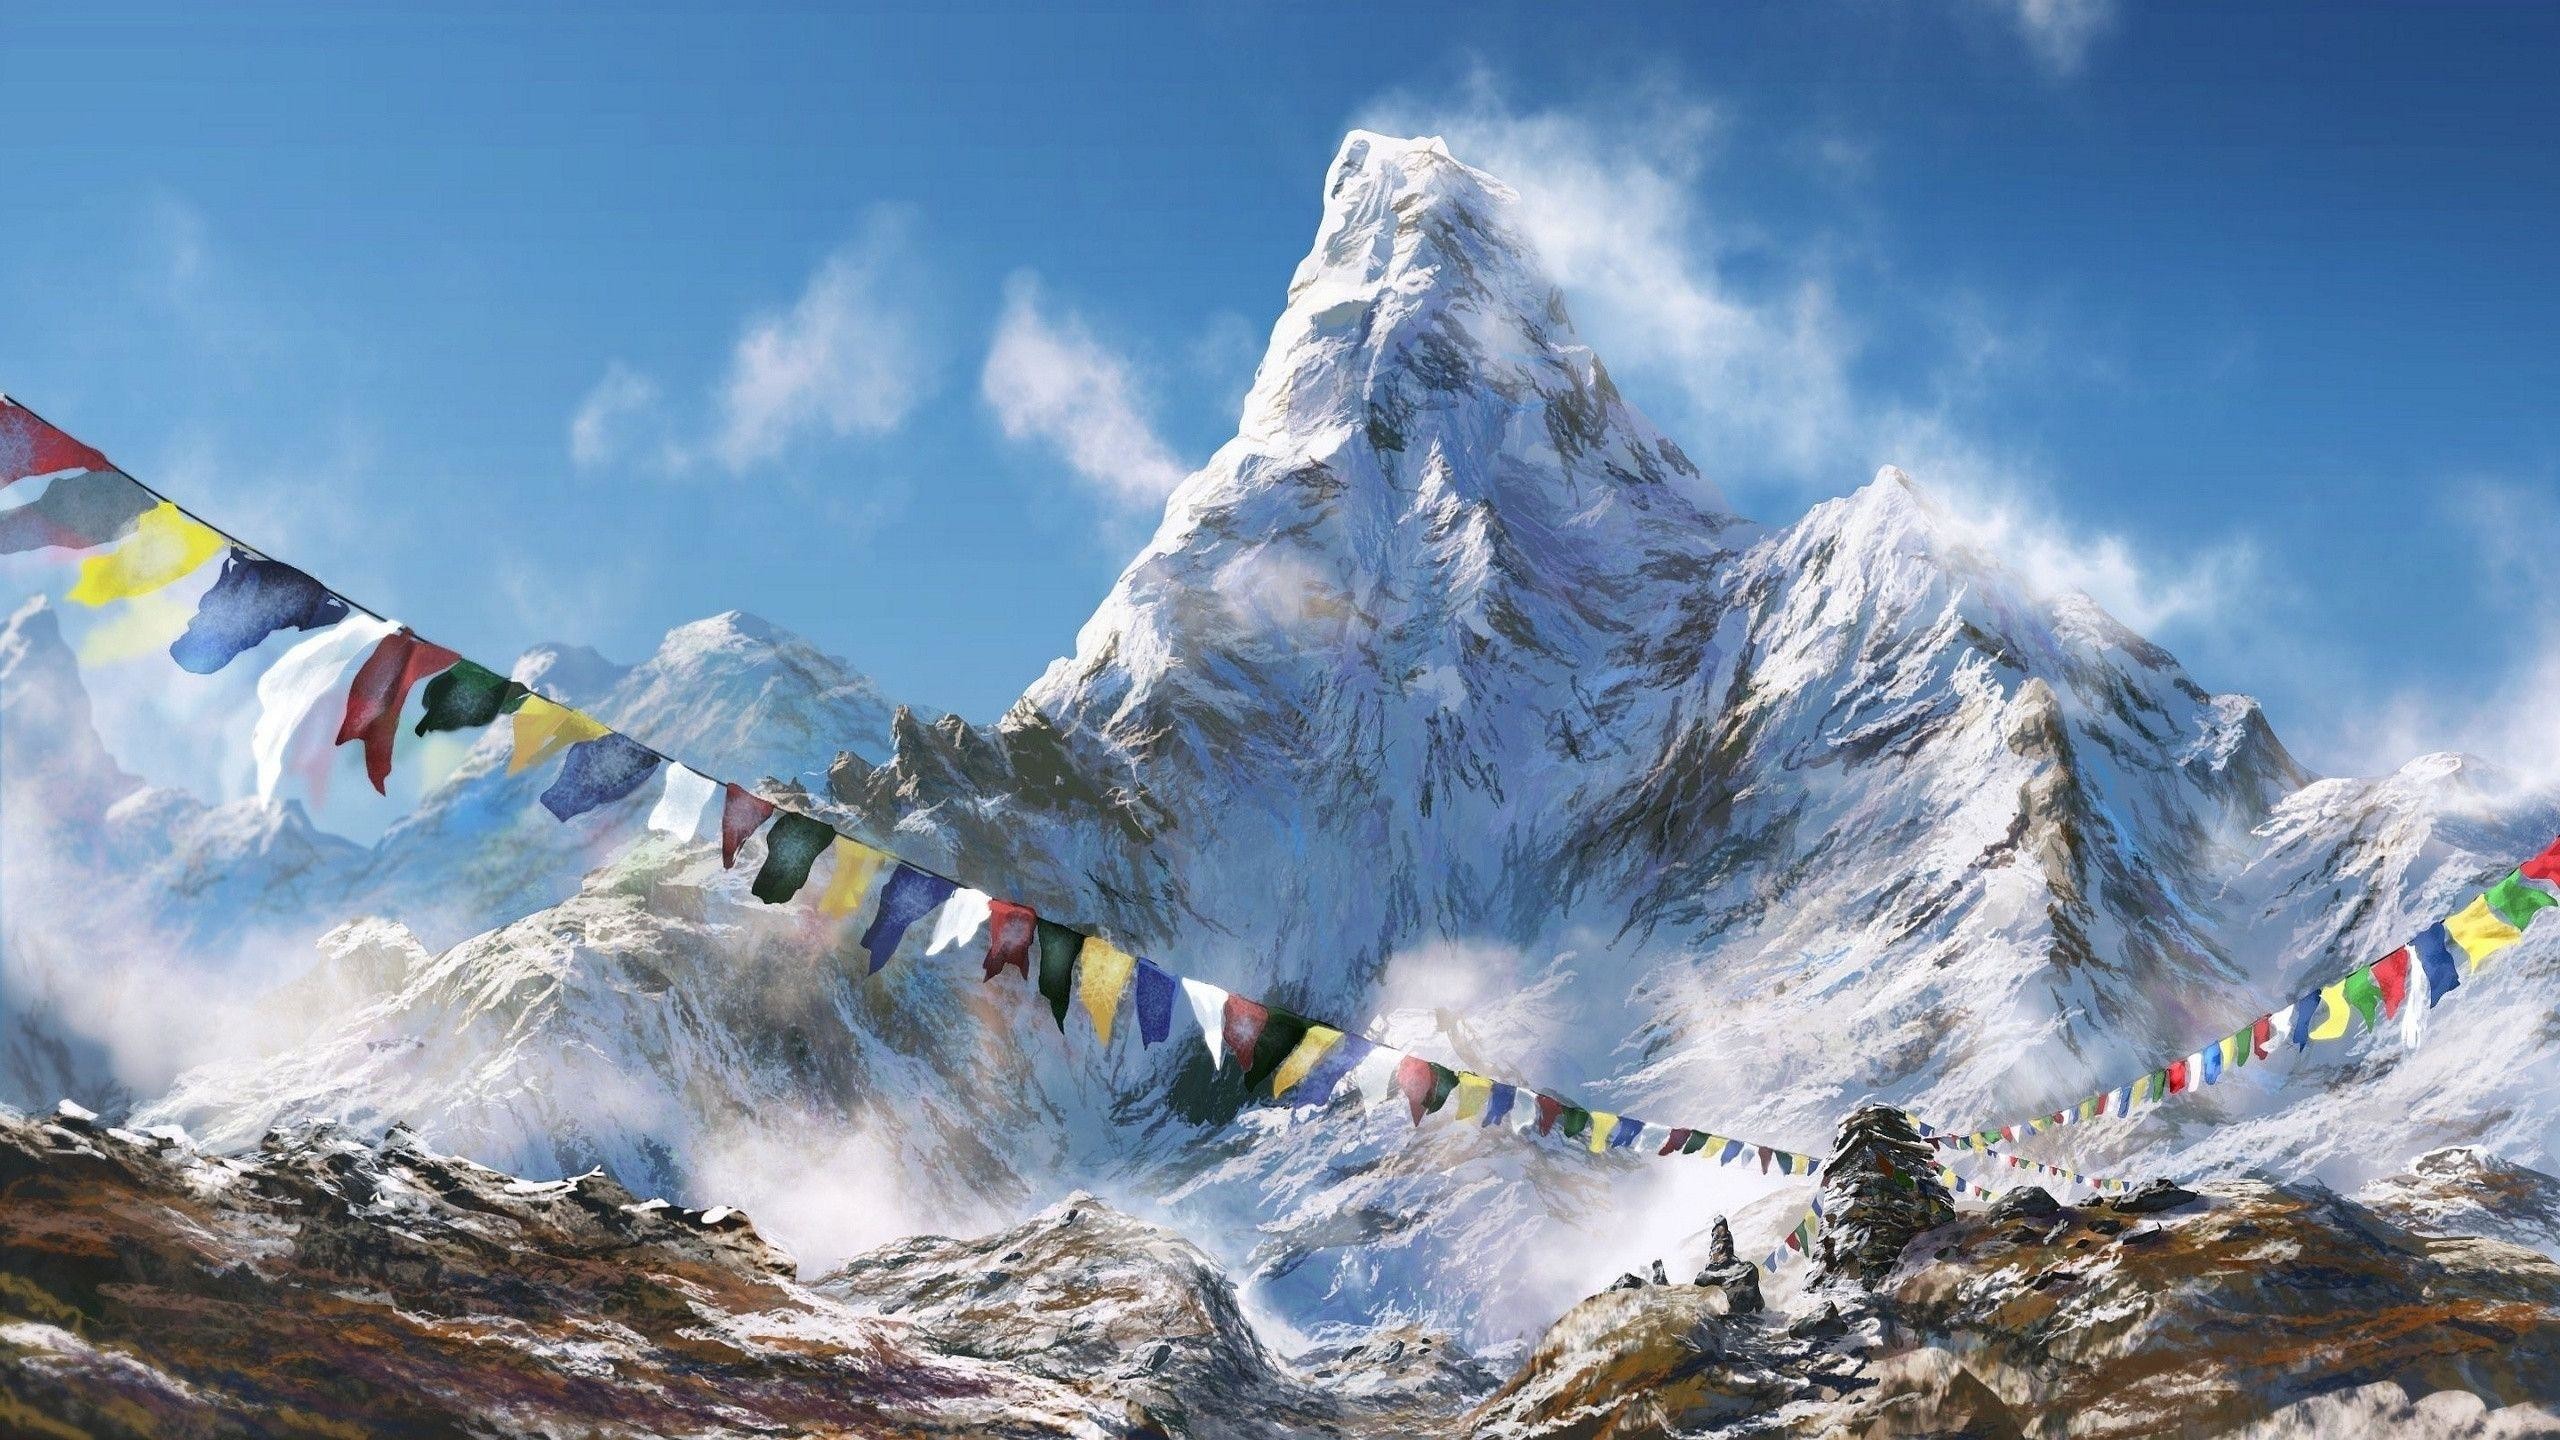 2560x1440 Fonds d'Ã©cran Himalaya : tous les wallpapers Himalaya